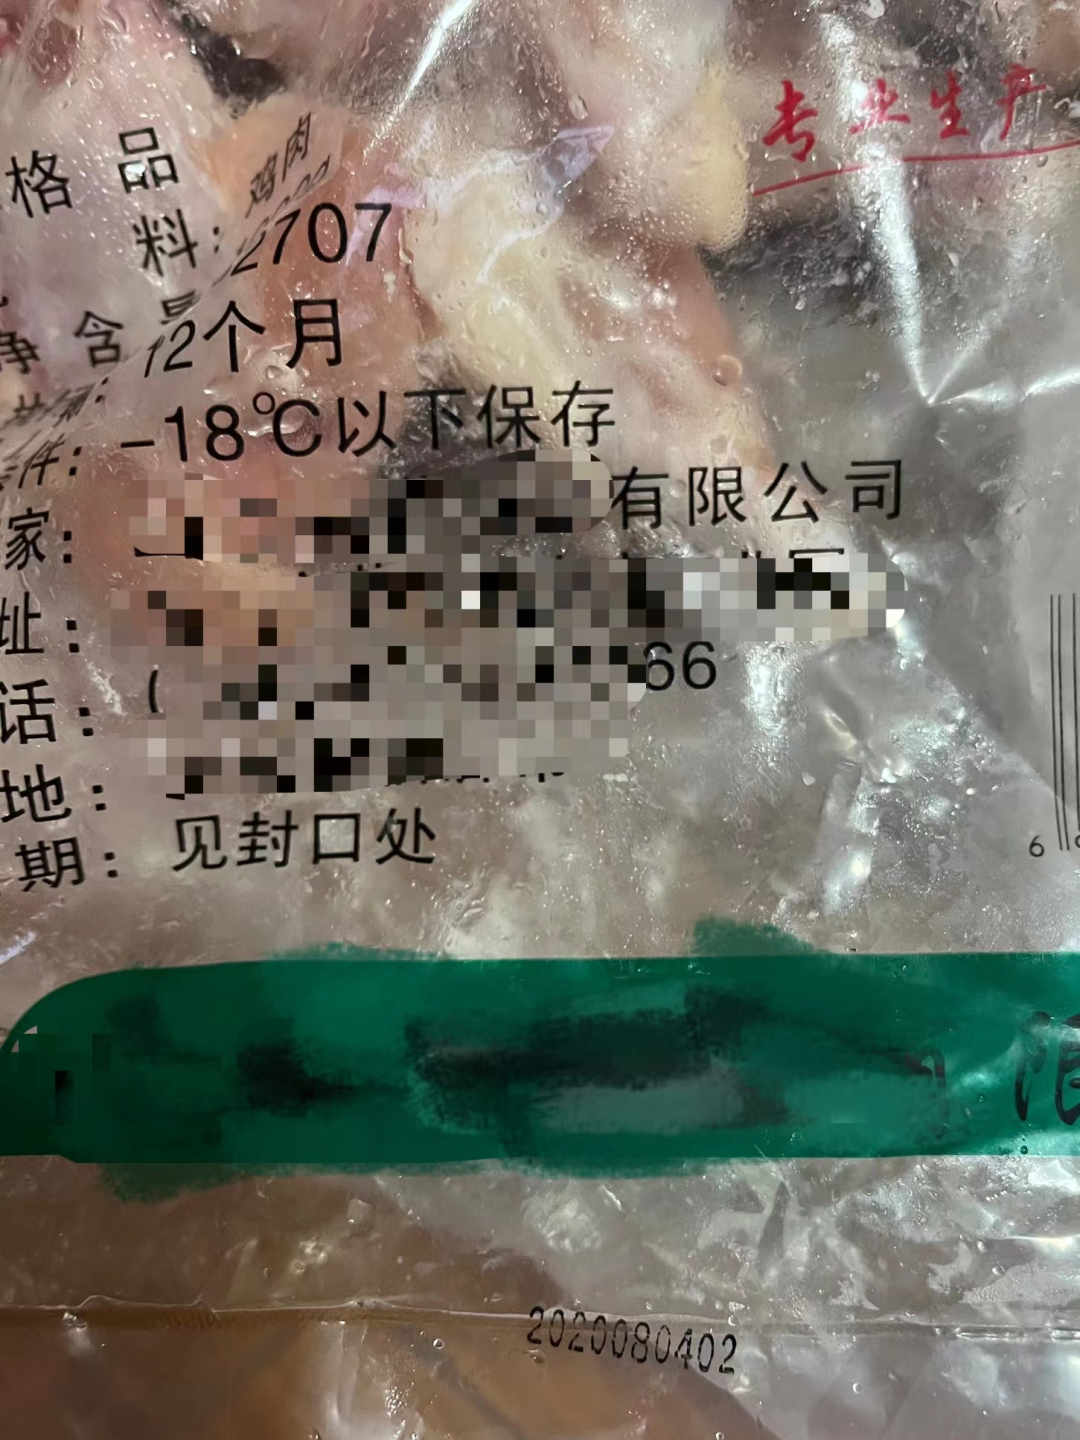 上海居民团购到过期冷冻鸡翅 当地市监部门通报